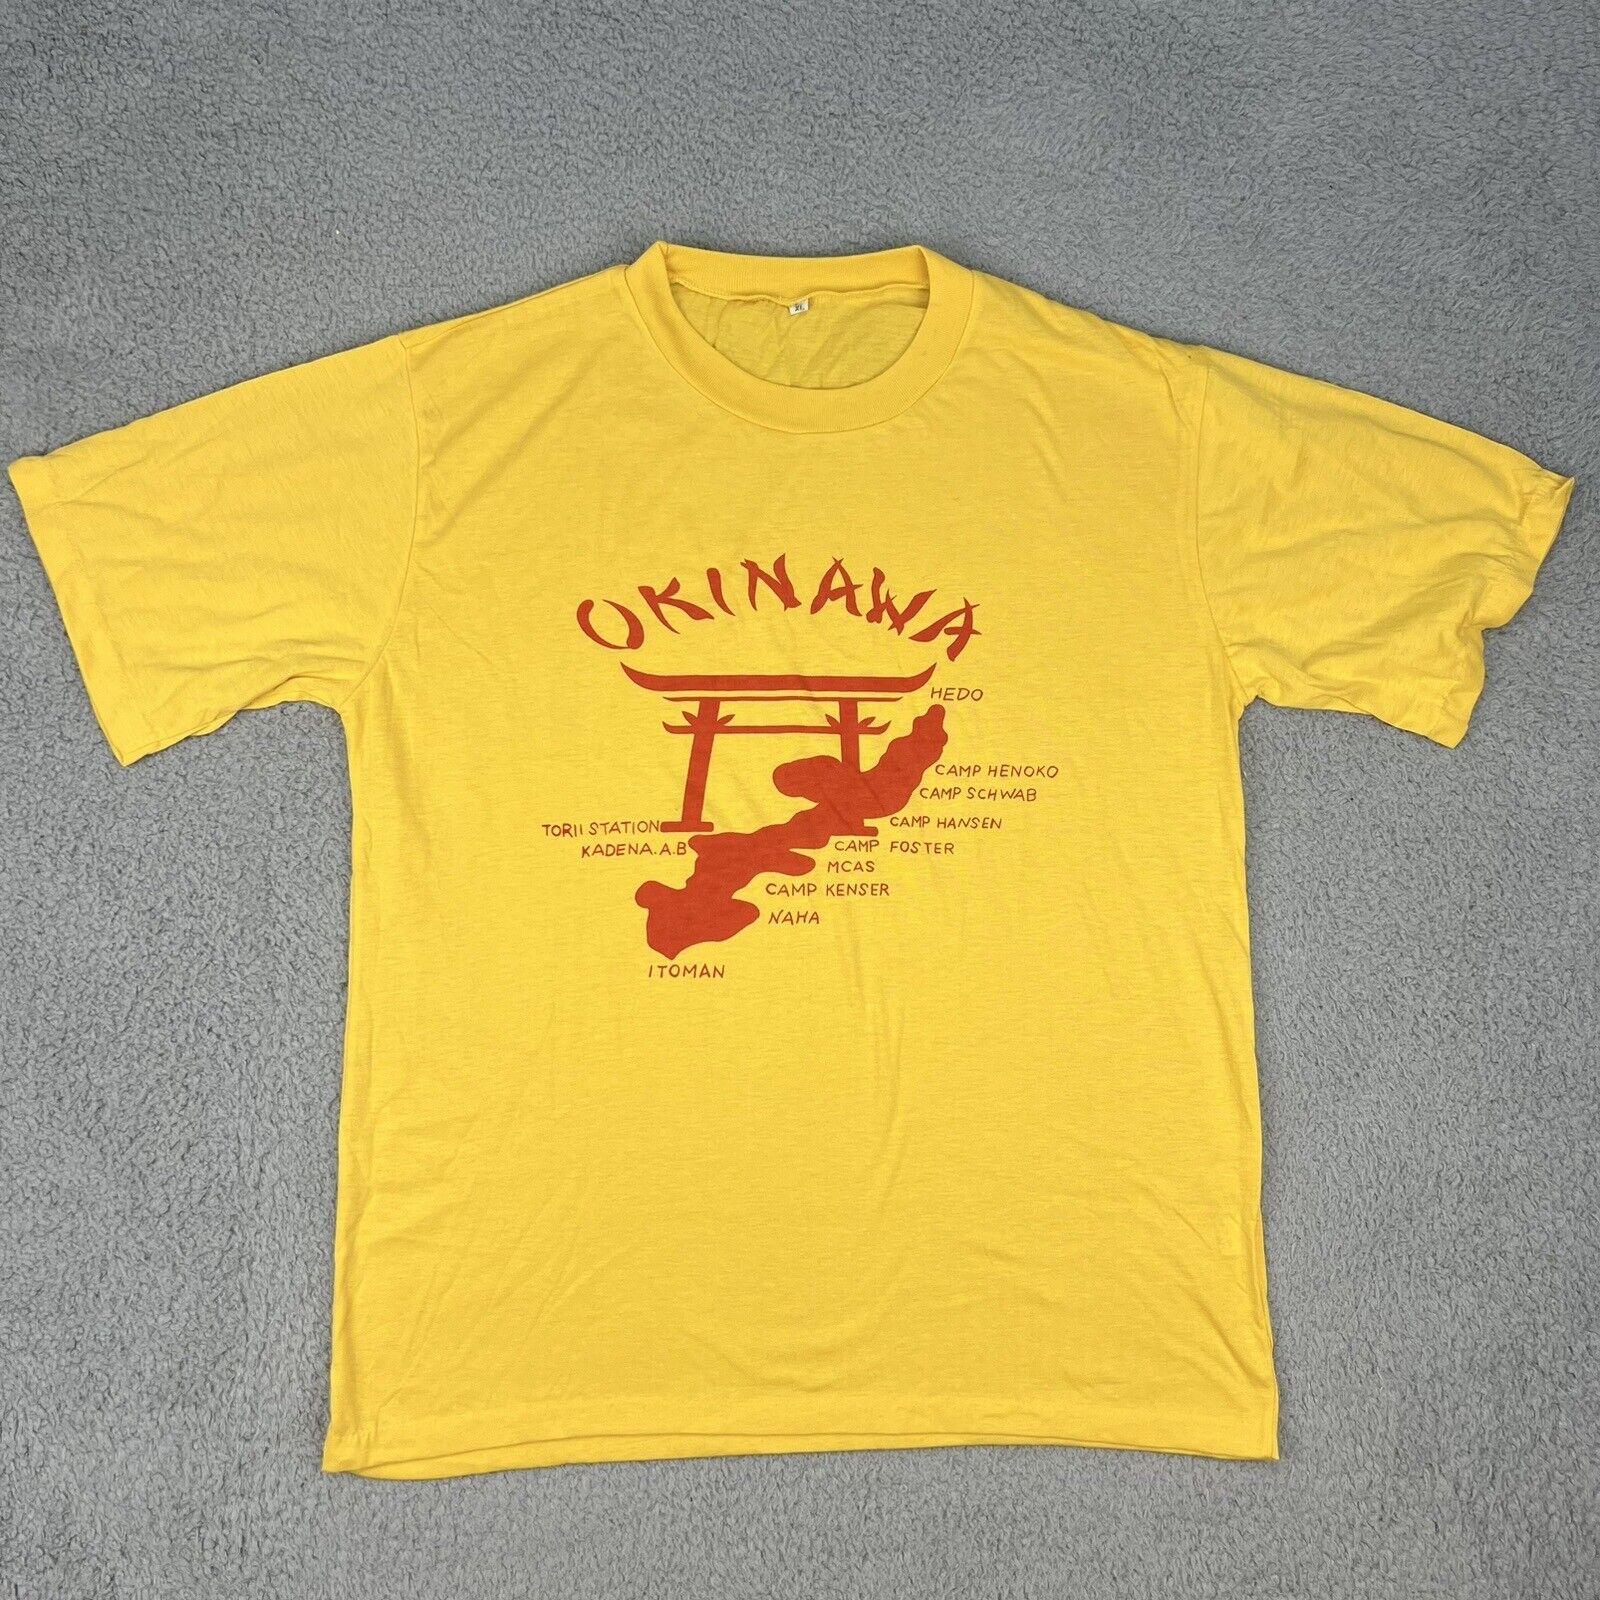 Vintage Okinawa Japan Shirt Adult Extra Large Yellow Single Stitch Military Base